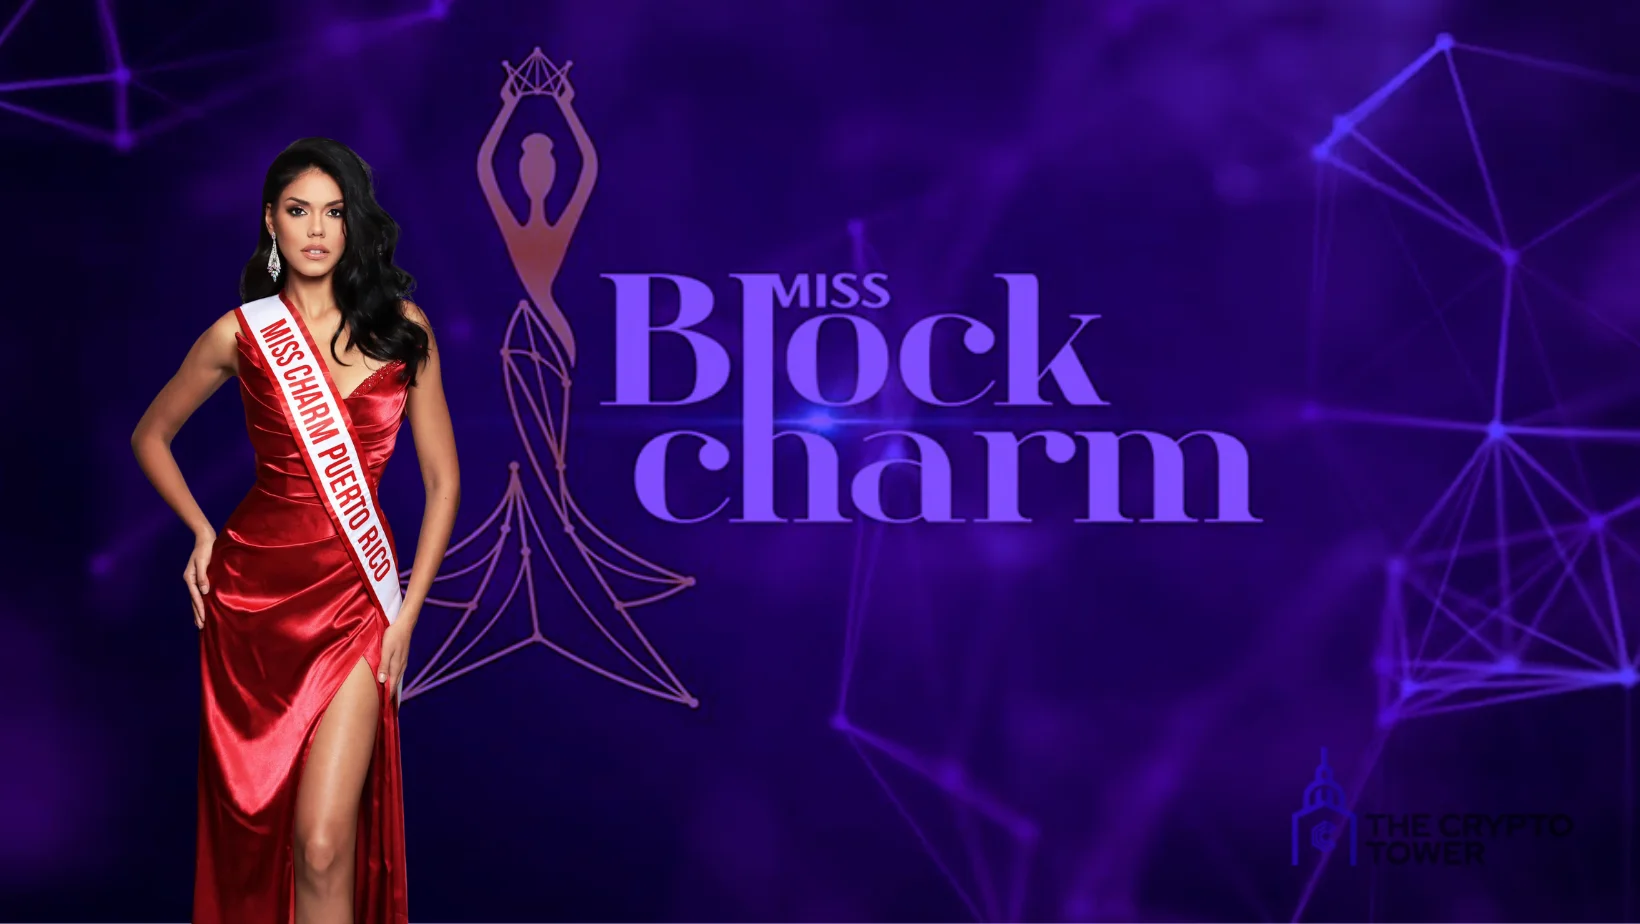 Miss BlockCharm es la nueva y revolucionaria era de los concursos de belleza basados en la tecnología blockchain.